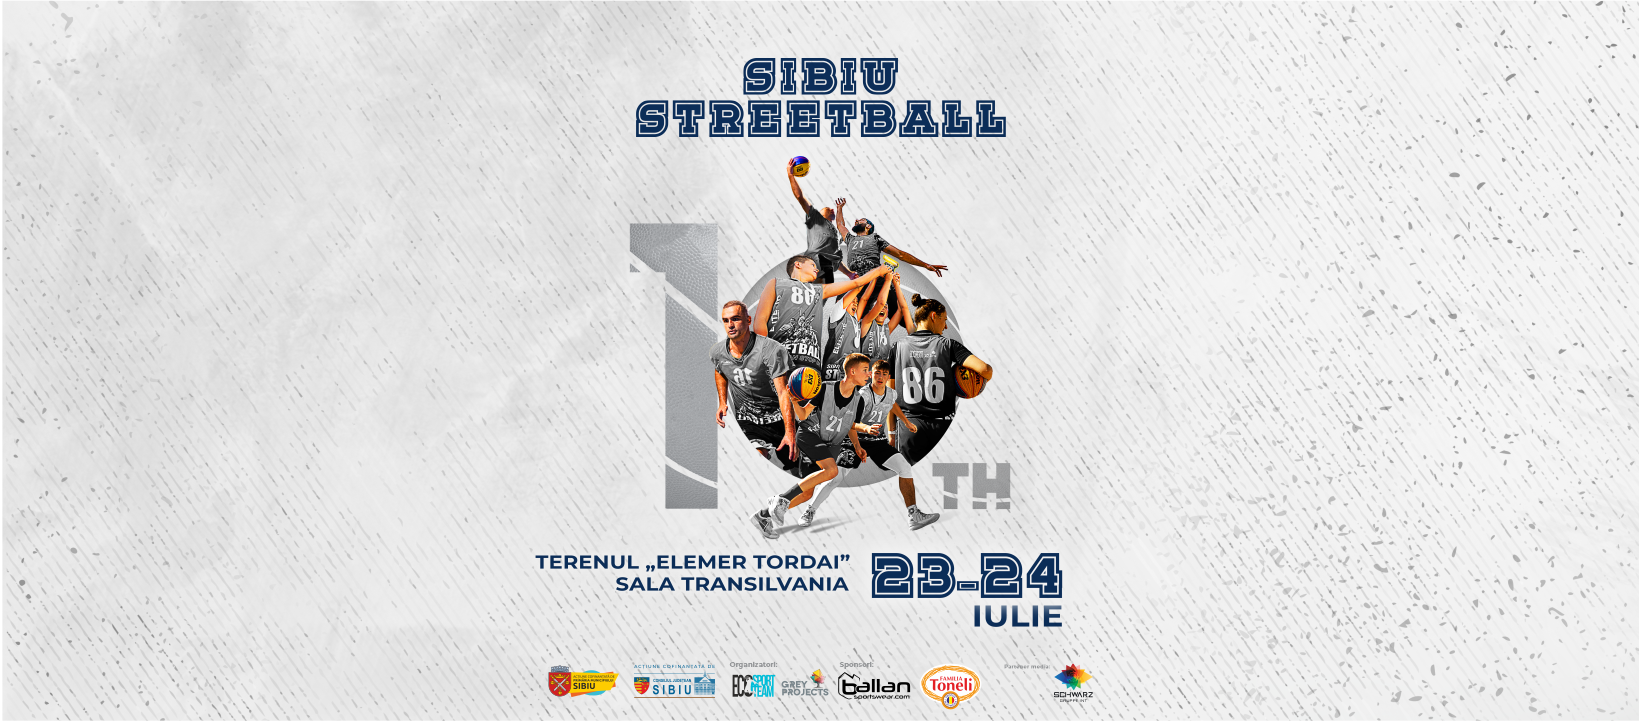 Sibiu Streetball 2022